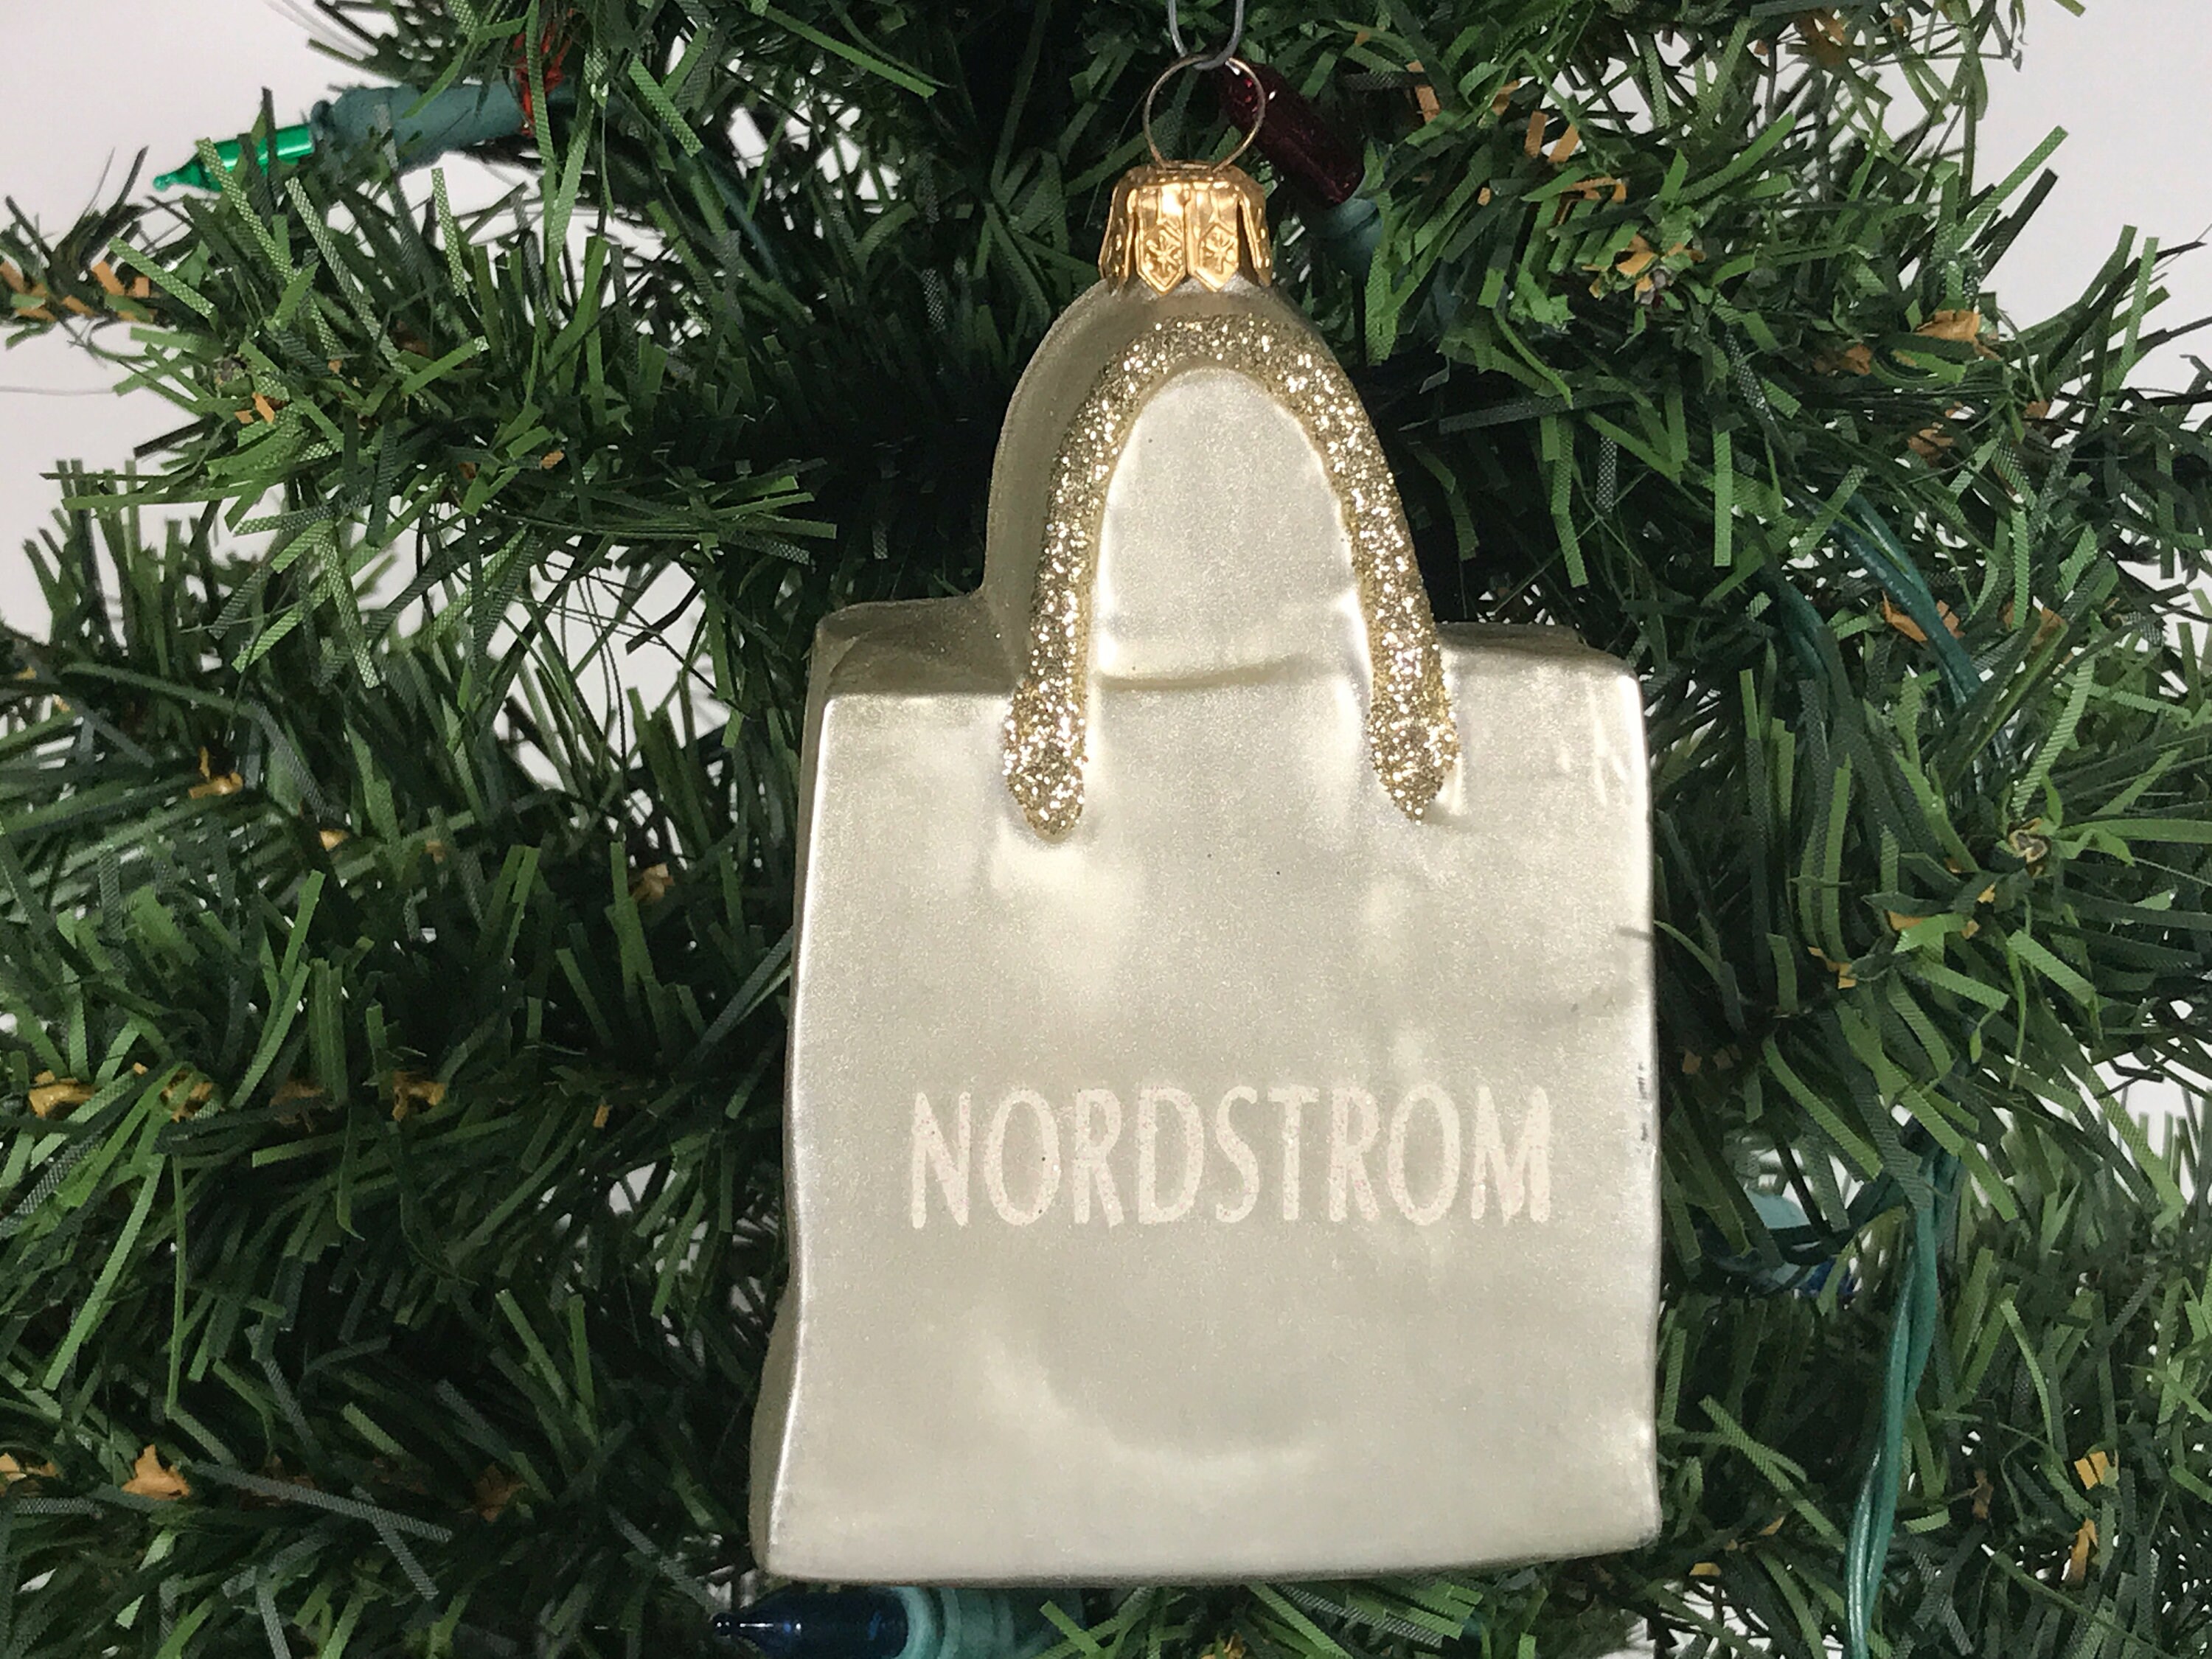 Nordstrom at Home 'Nordstrom Storefront Shopping Bag' Ornament